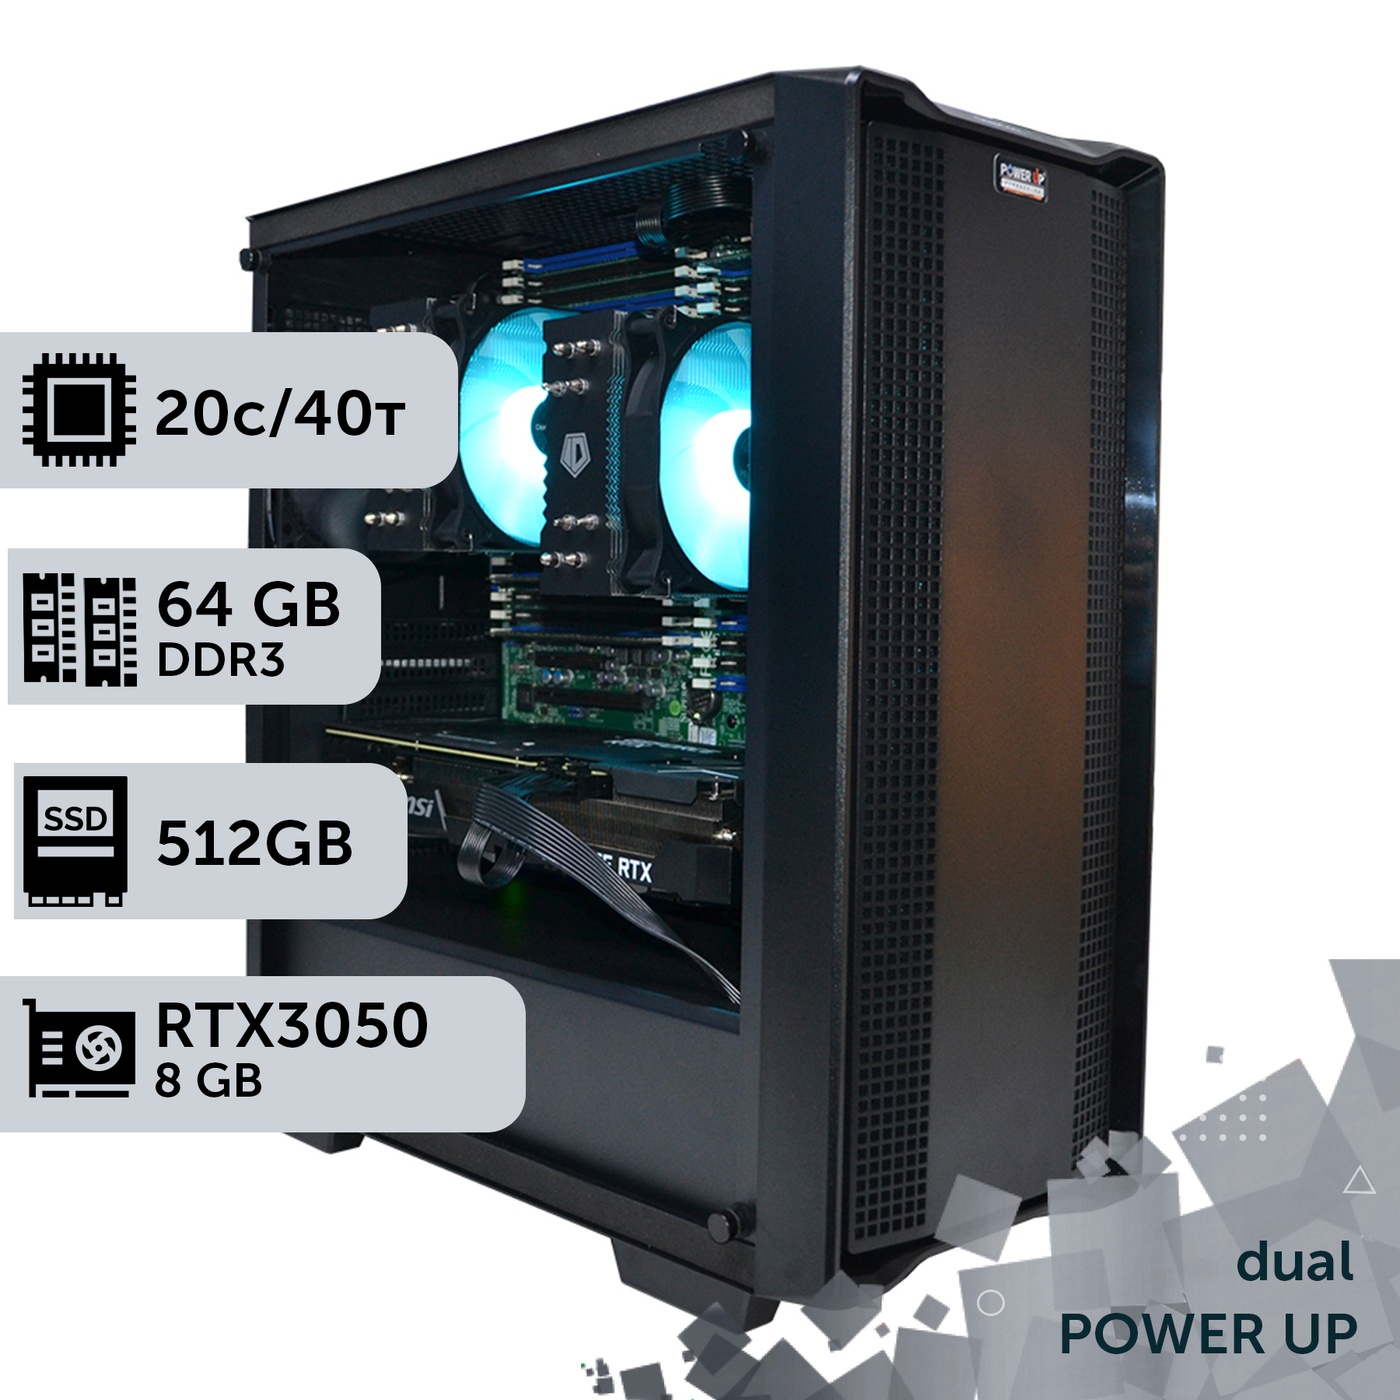 Двухпроцессорная рабочая станция PowerUp #310 Xeon E5 2670 v2 x2/64 GB/SSD 512GB/GeForce RTX 3050 8GB